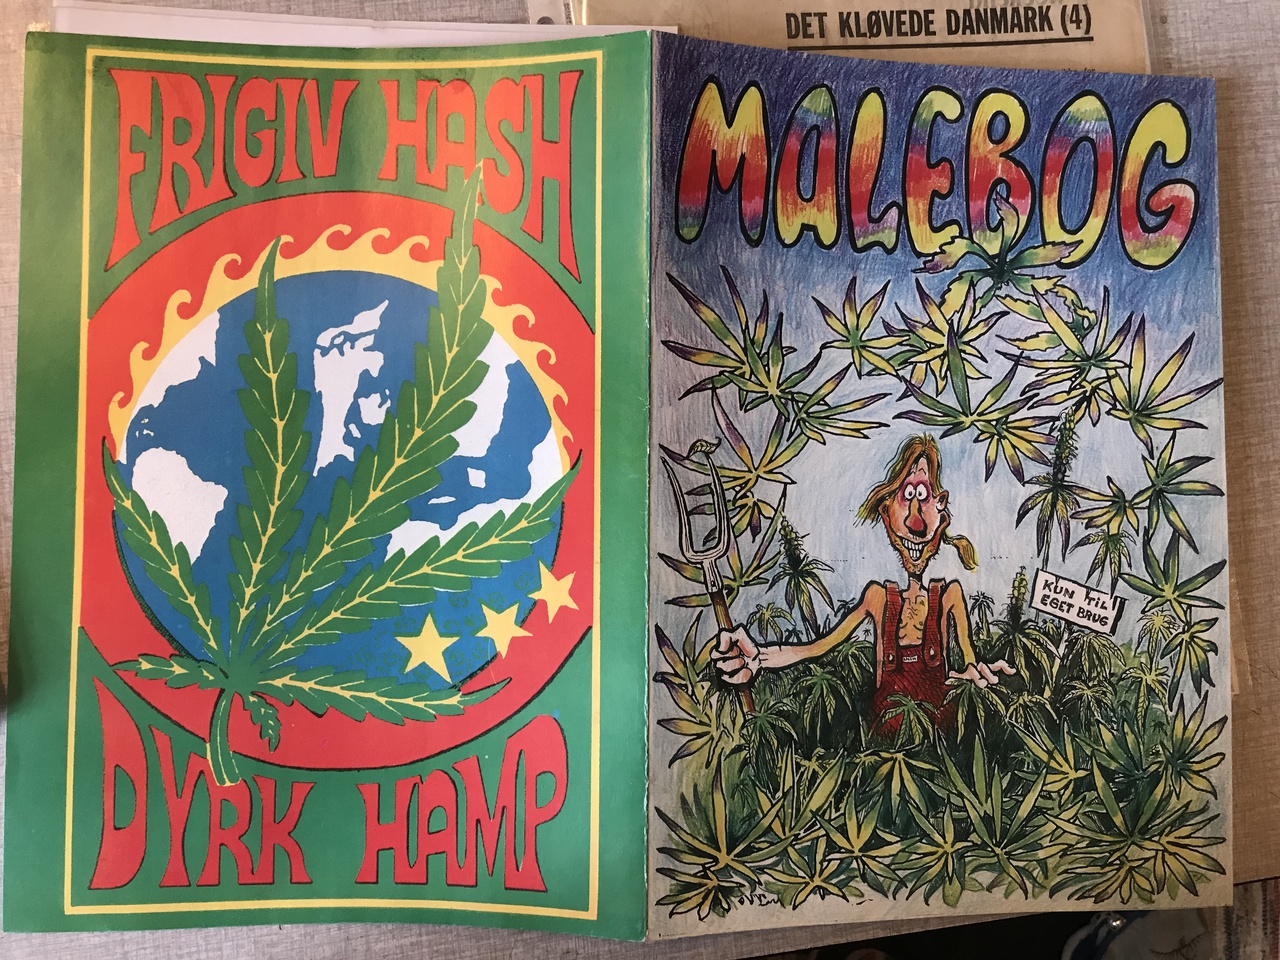 Colouring book, legalise Cannabis